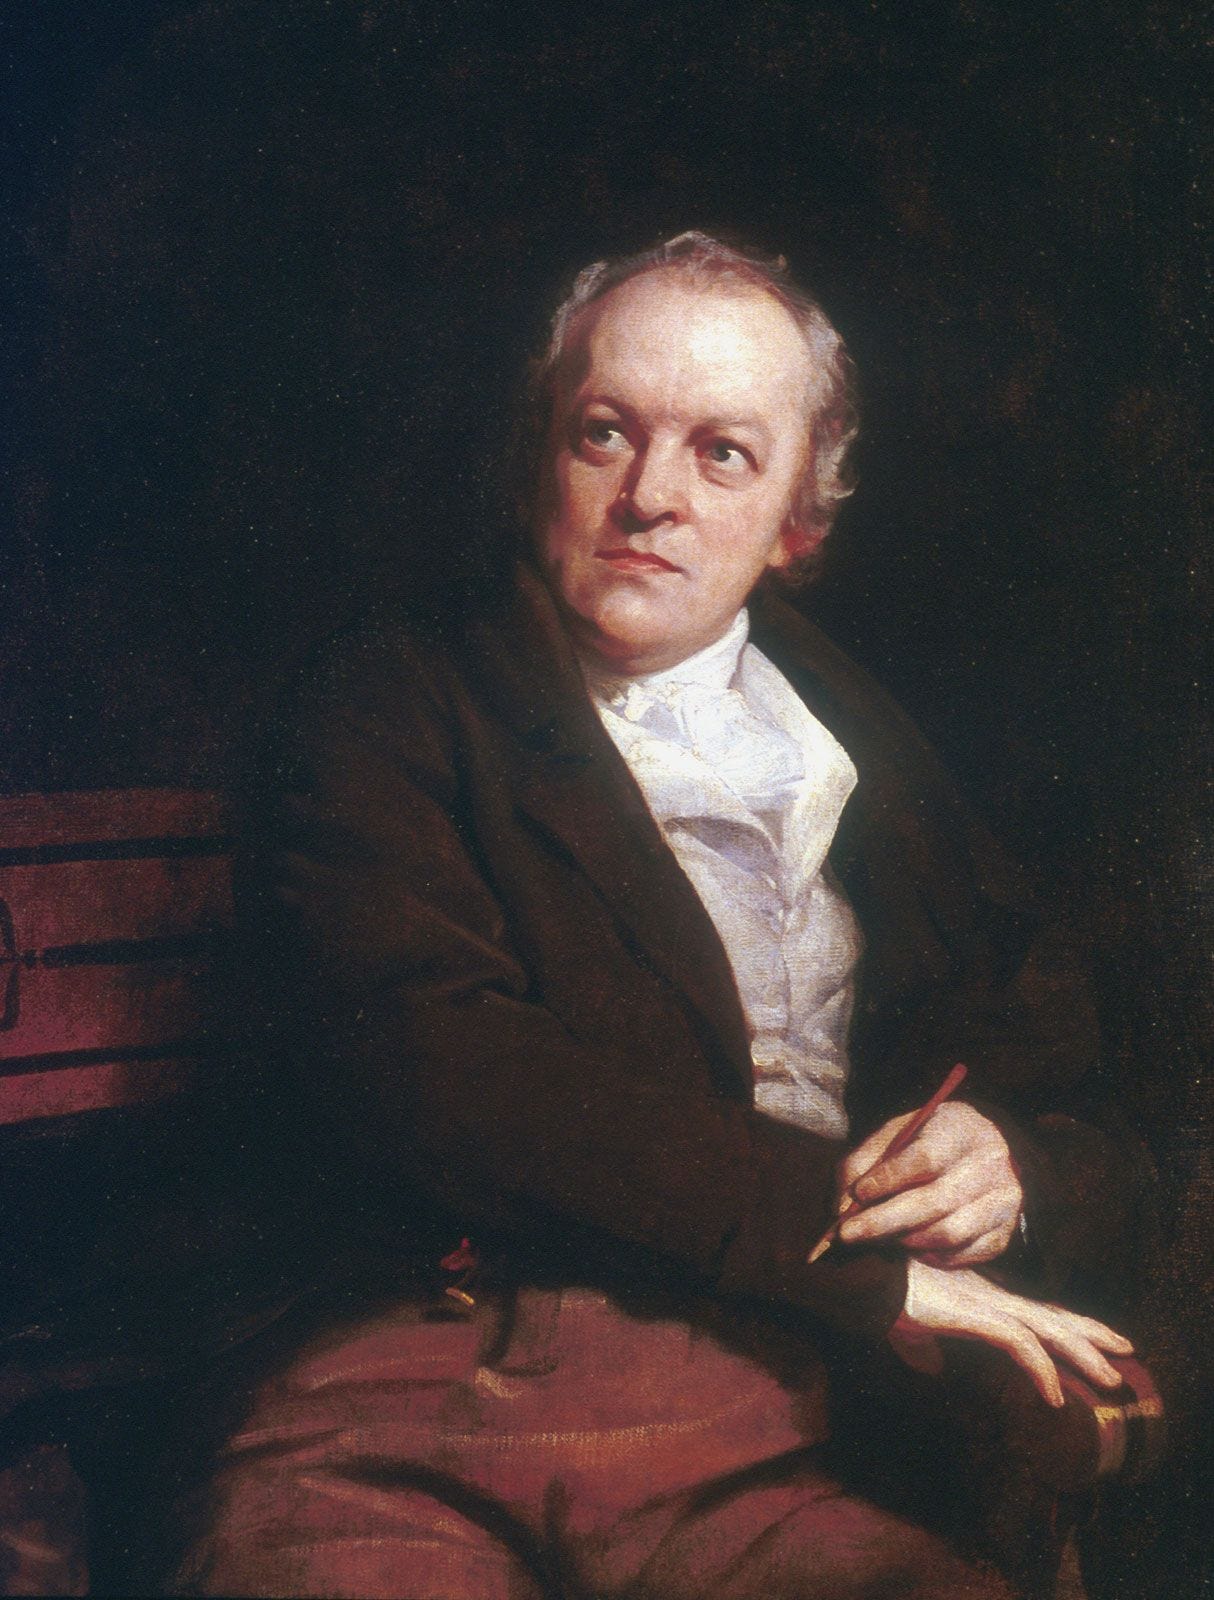 William Blake's "The Divine Image"